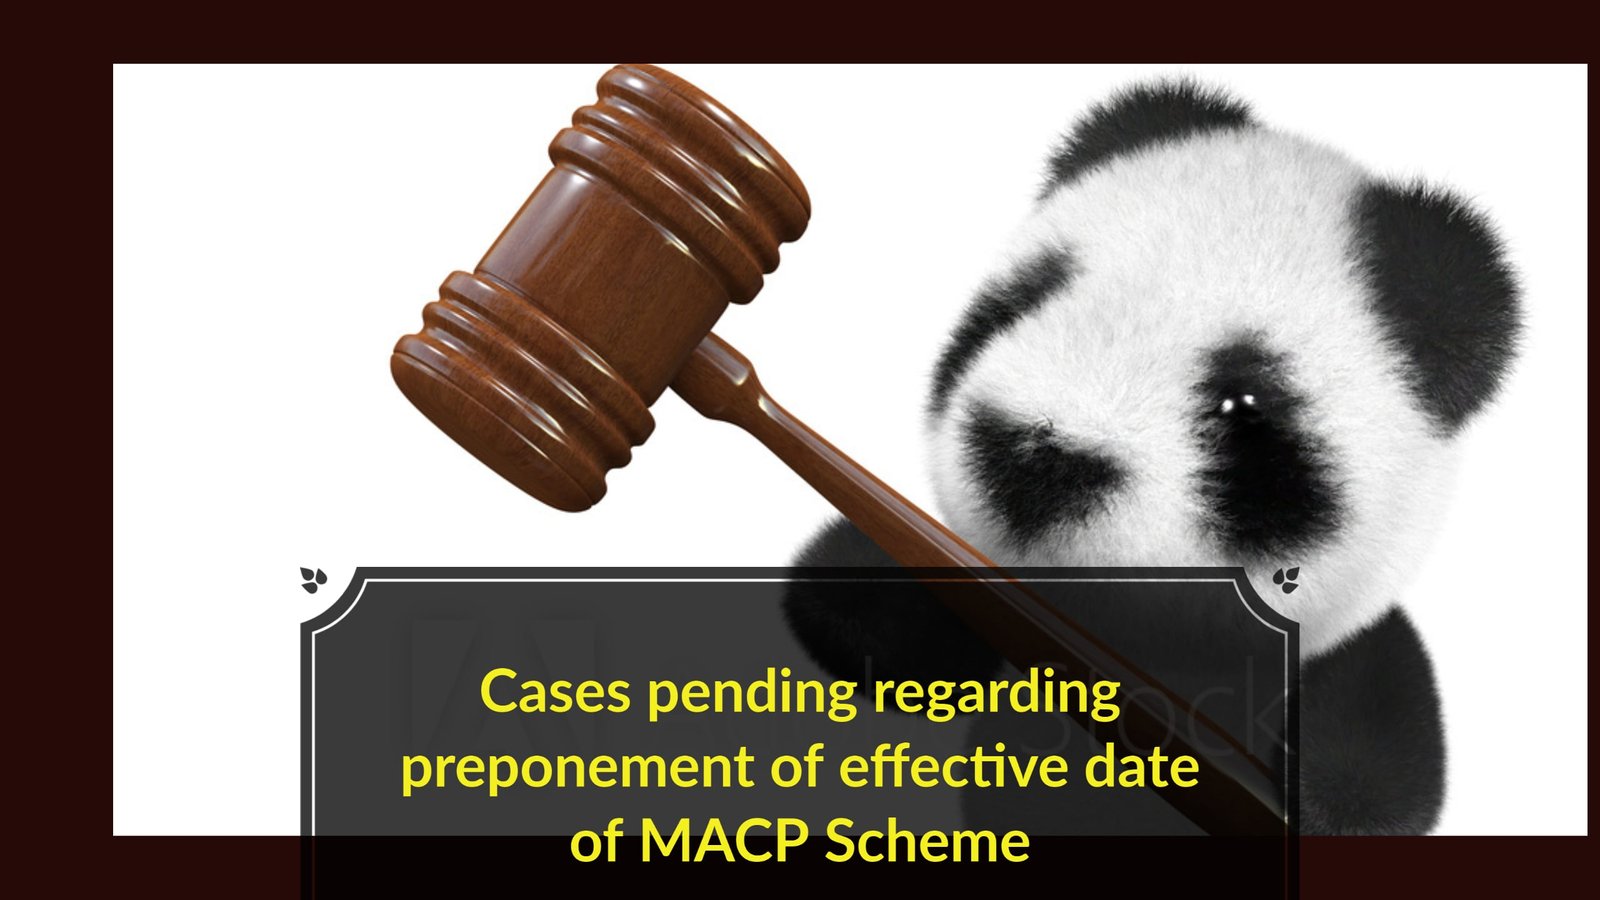 Cases pending regarding preponement of effective date of MACP Scheme